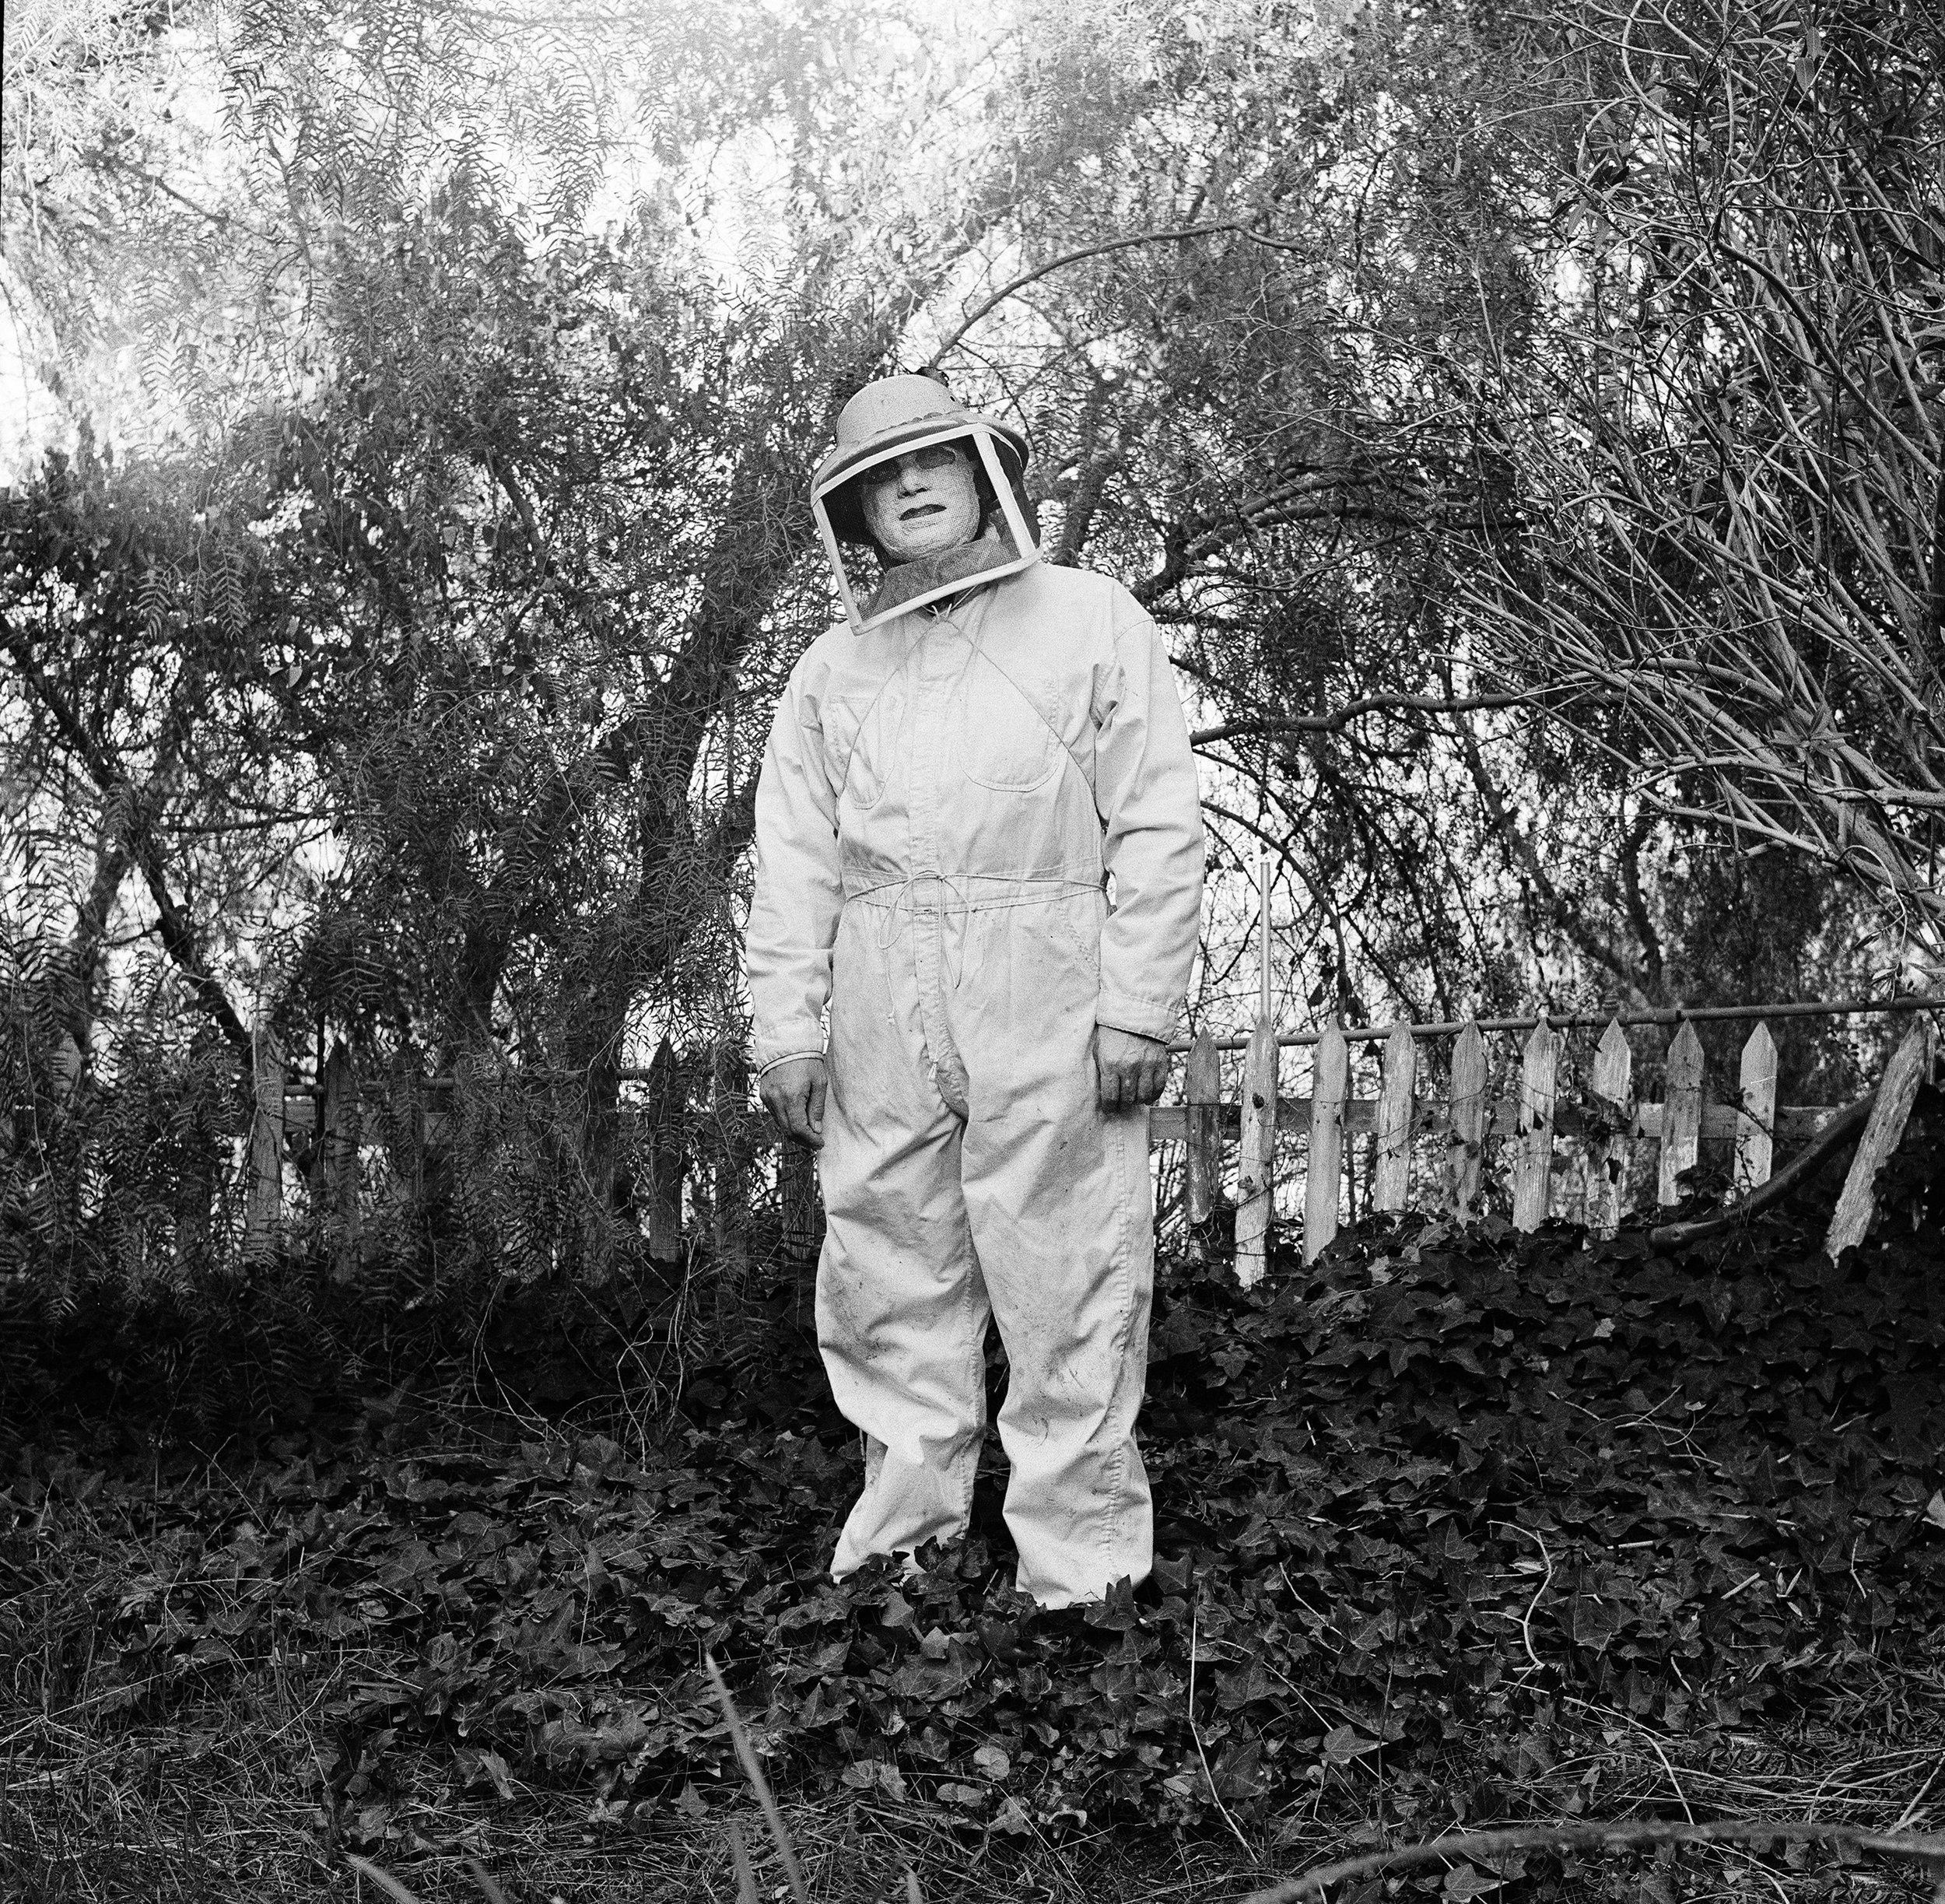 Beekeeper, 1977, Woodland Hills, California